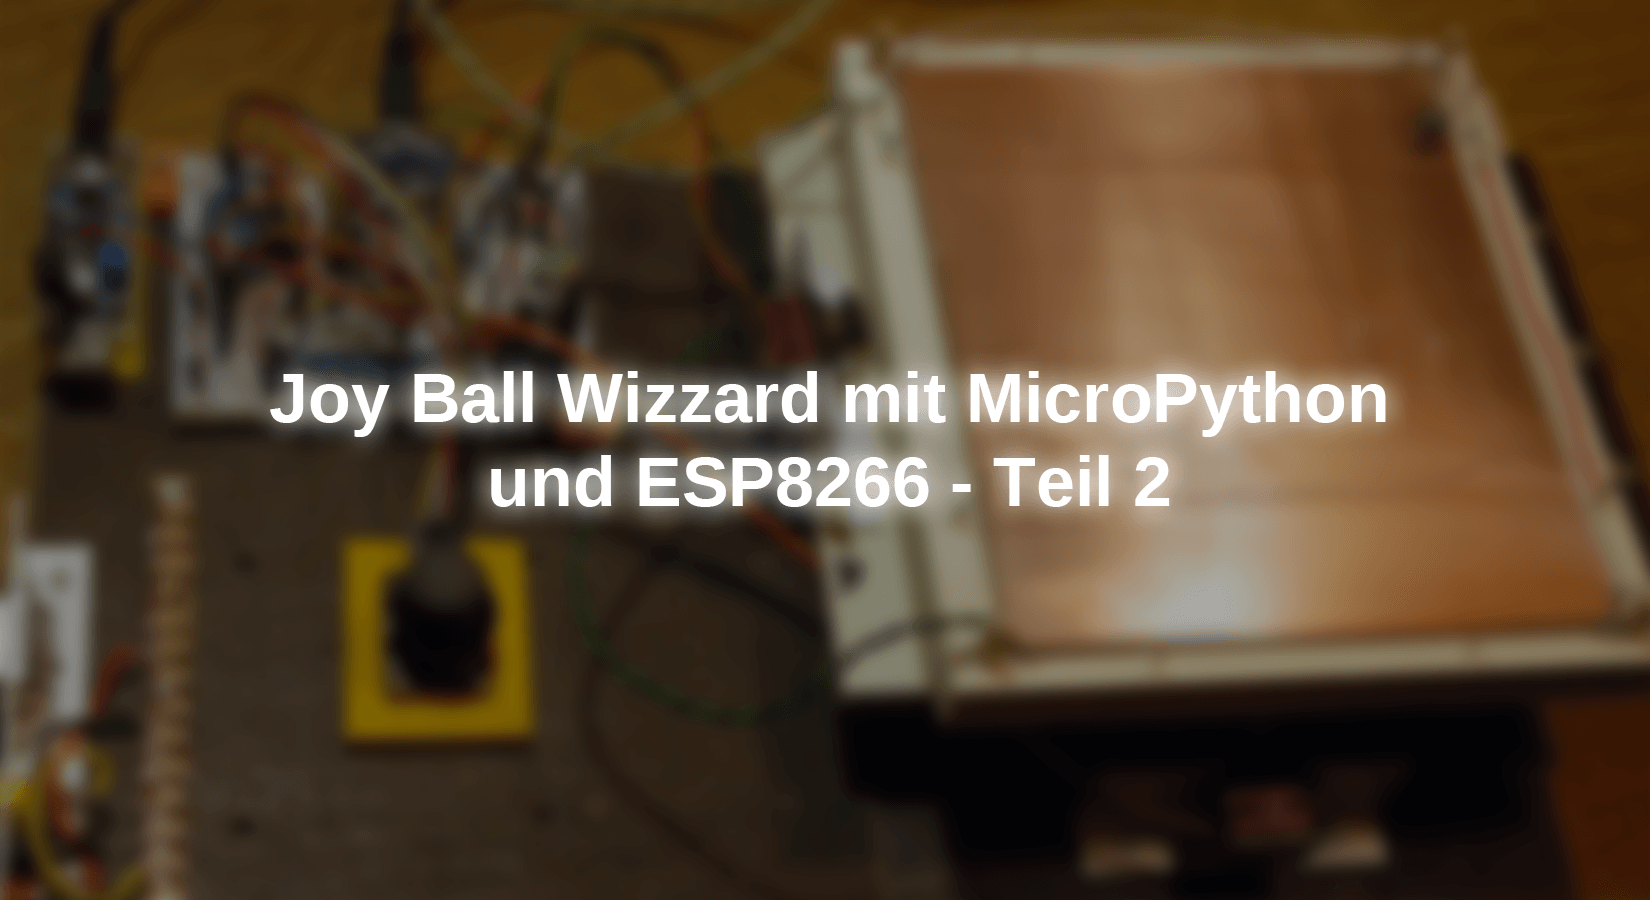 Joy Ball Wizzard mit MicroPython und ESP8266 - Teil 2 - AZ-Delivery